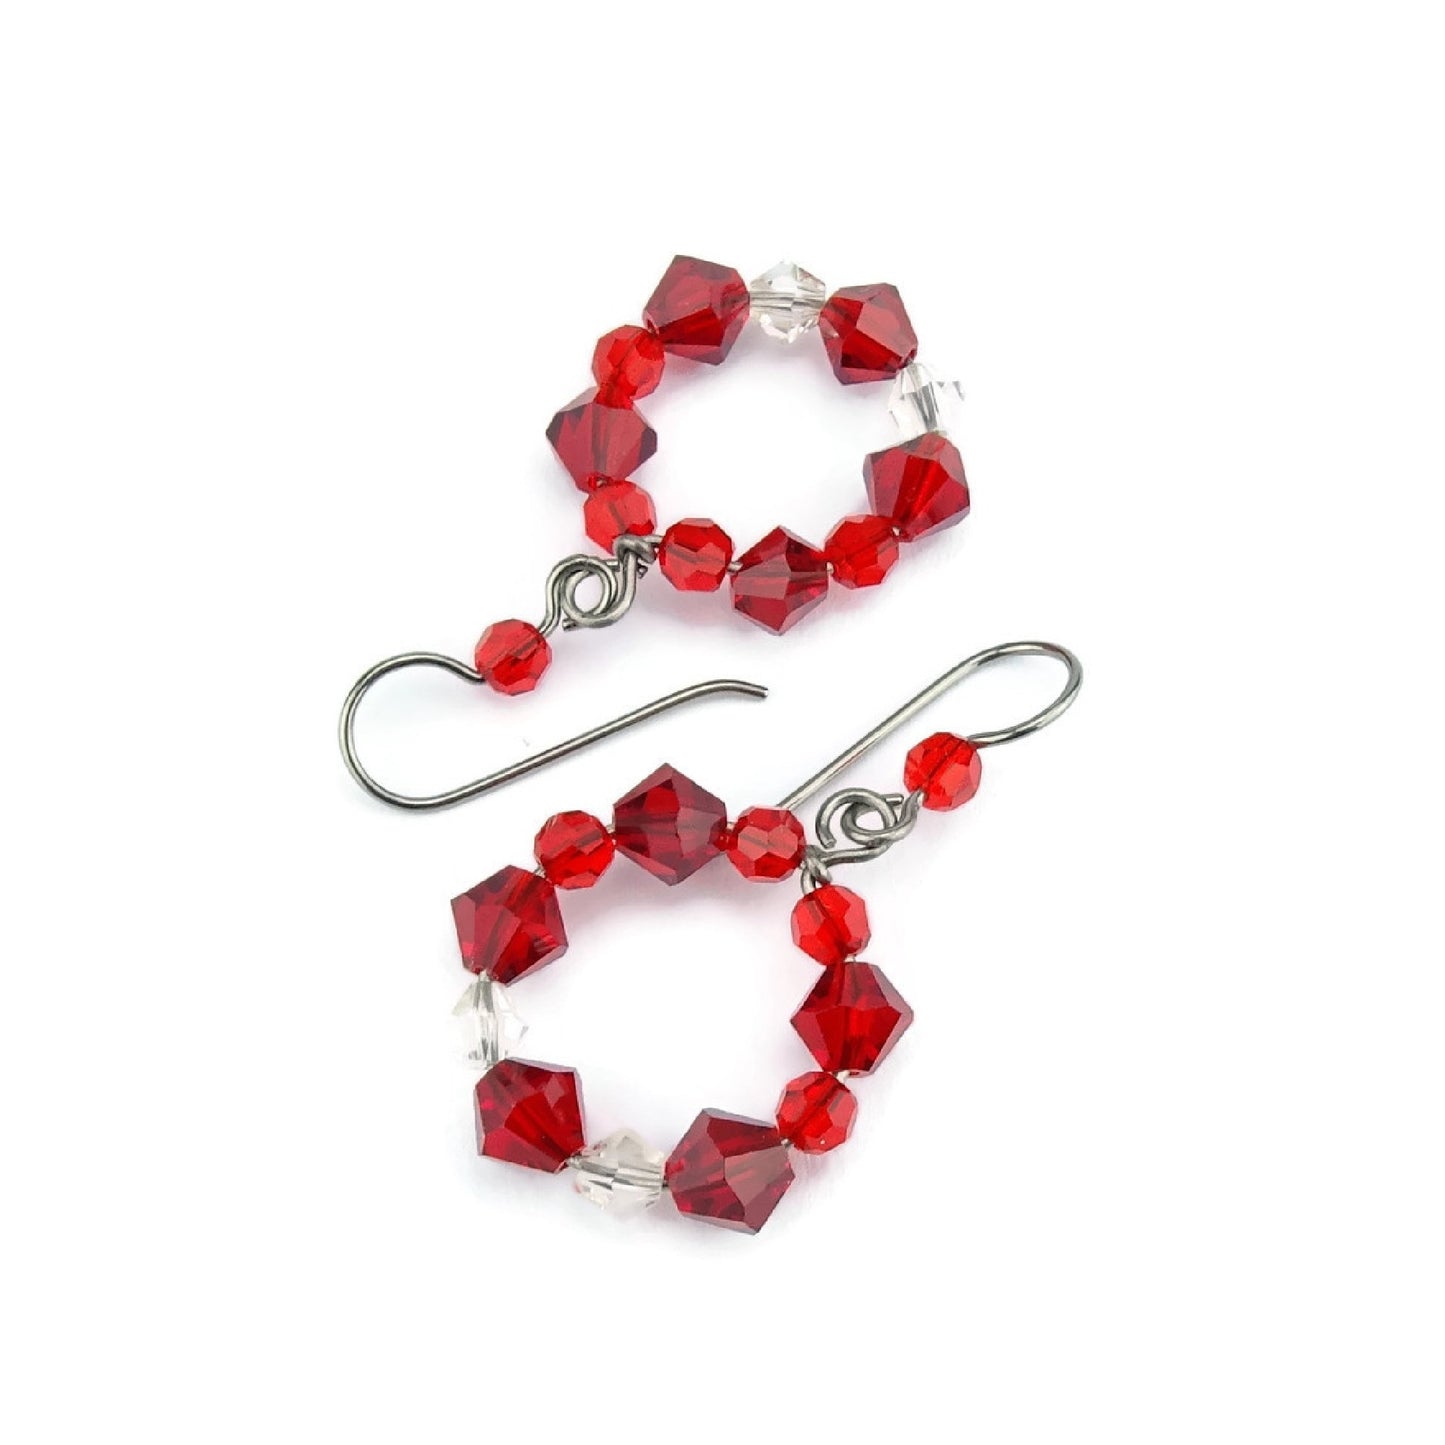 Red Crystal Hoops, Titanium Earrings, Siam Red Swarovski, Niobium Earrings for Sensitive Ears, Hypoallergenic Nickel Free, Red Beaded Circle